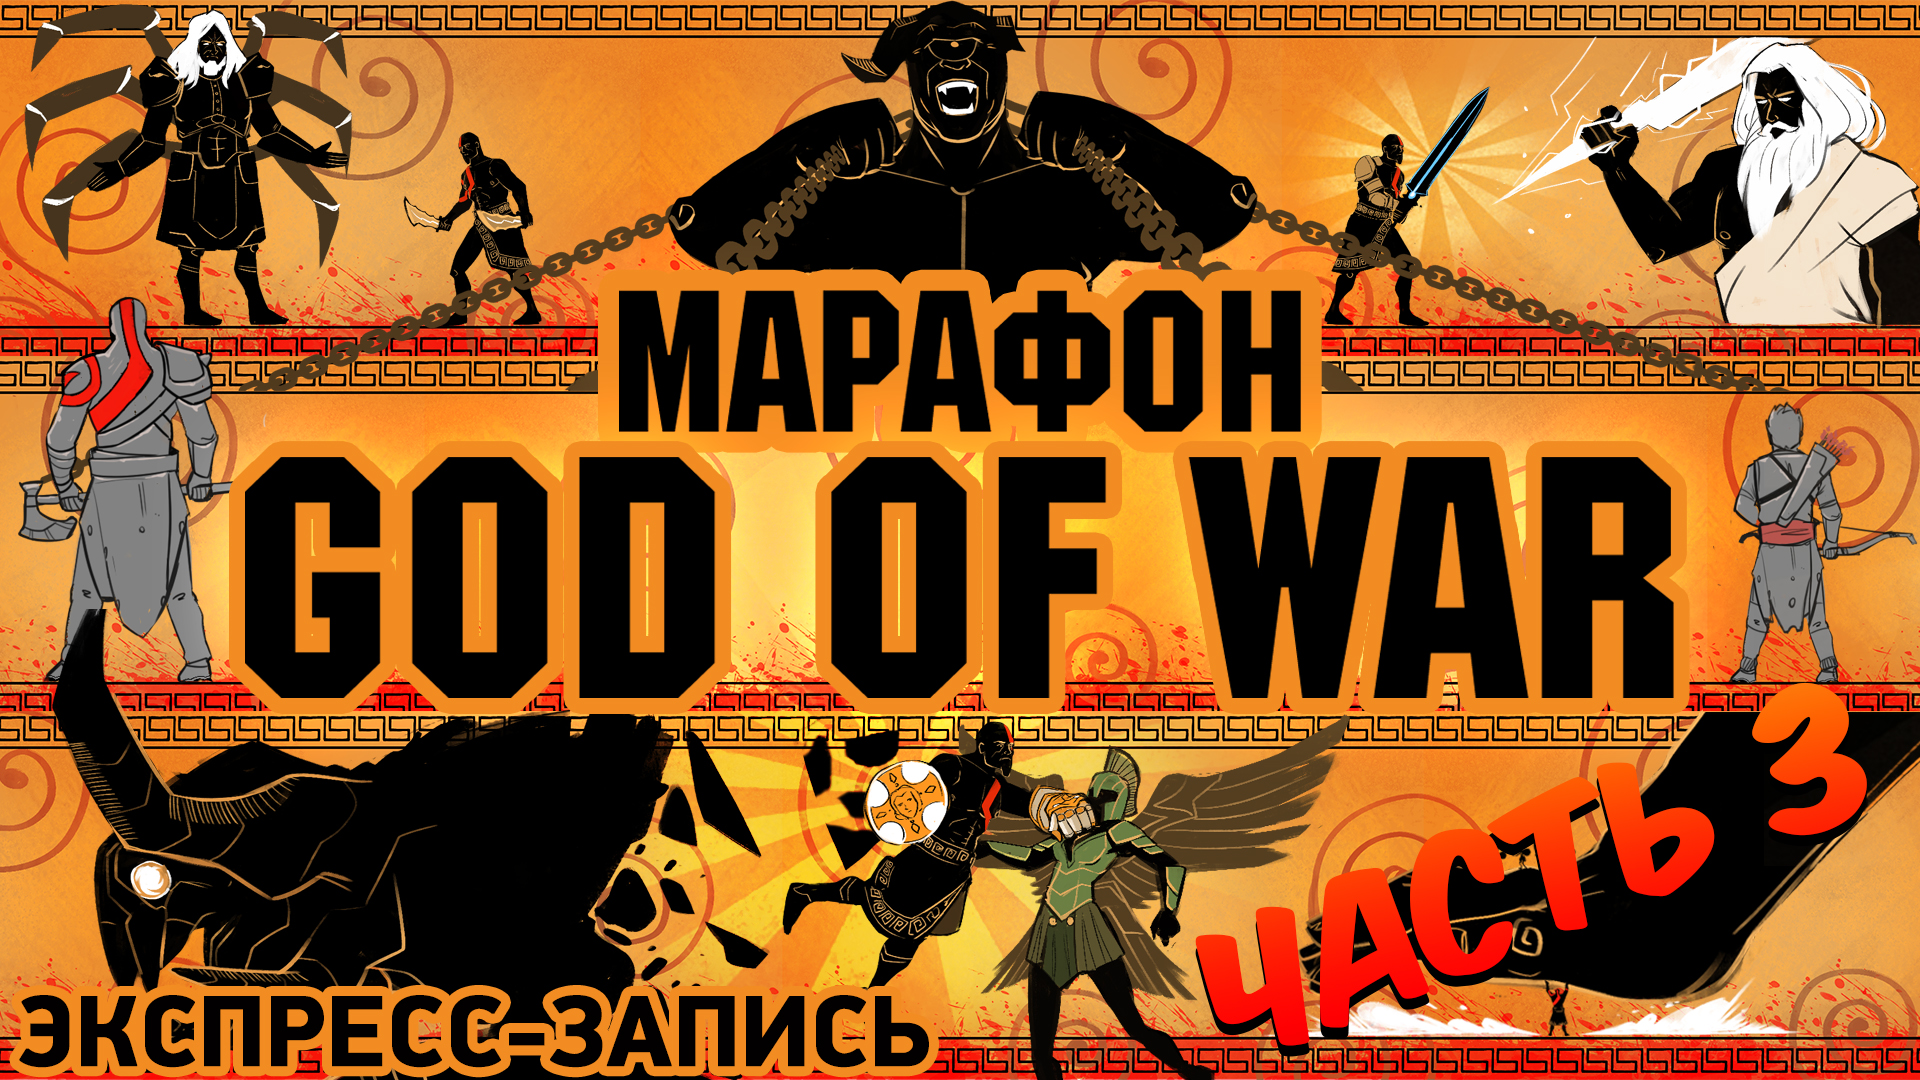 God of War (2018): Марафон God of War. Комплексная экспресс-запись, часть 3